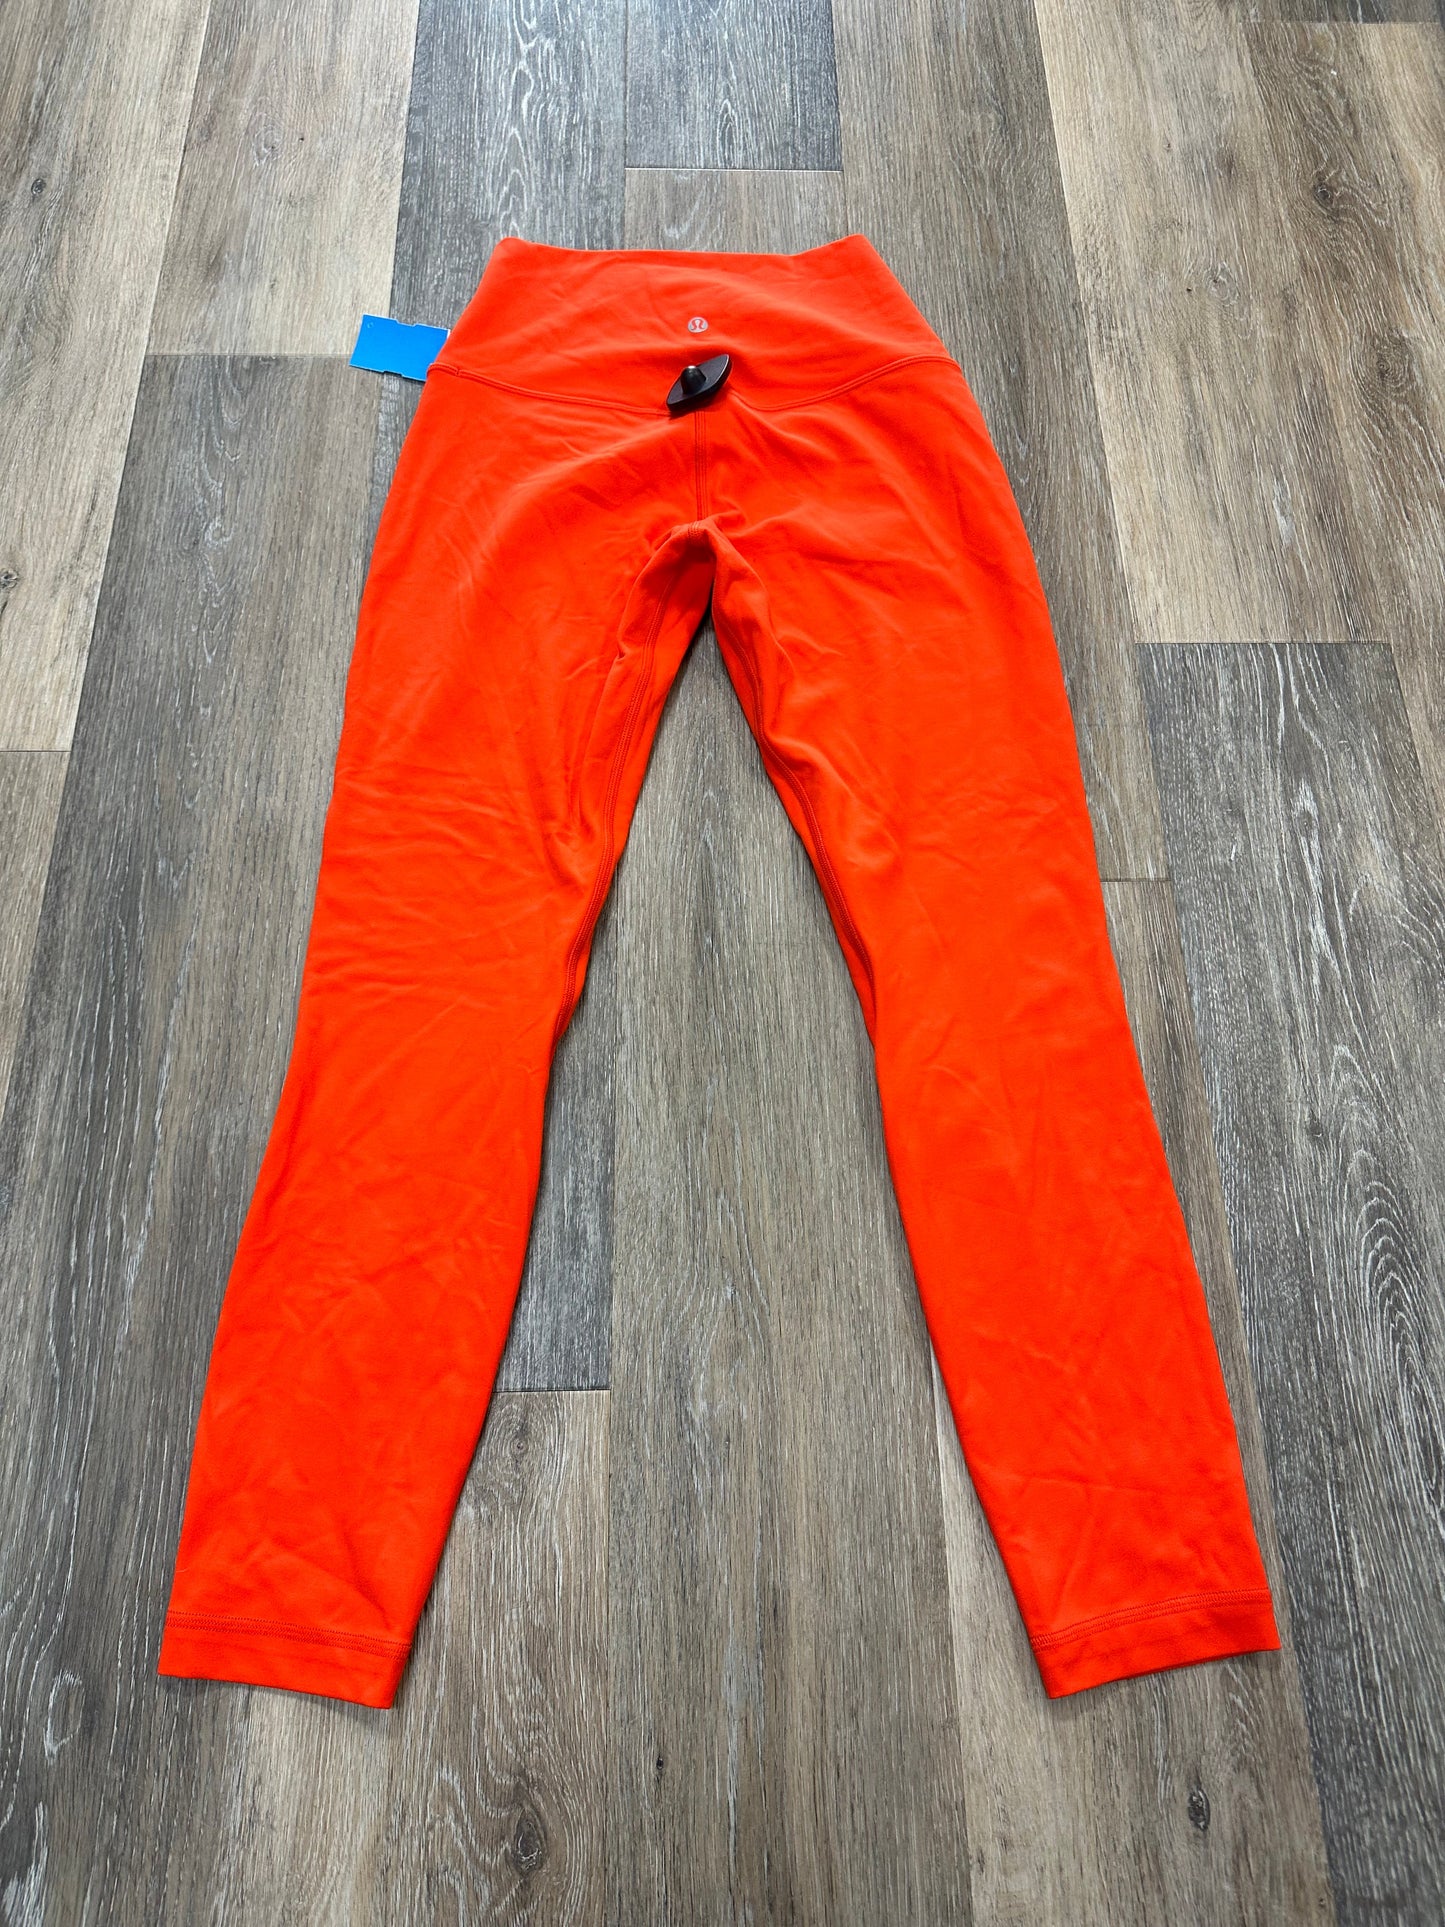 Orange Athletic Pants Lululemon, Size 6